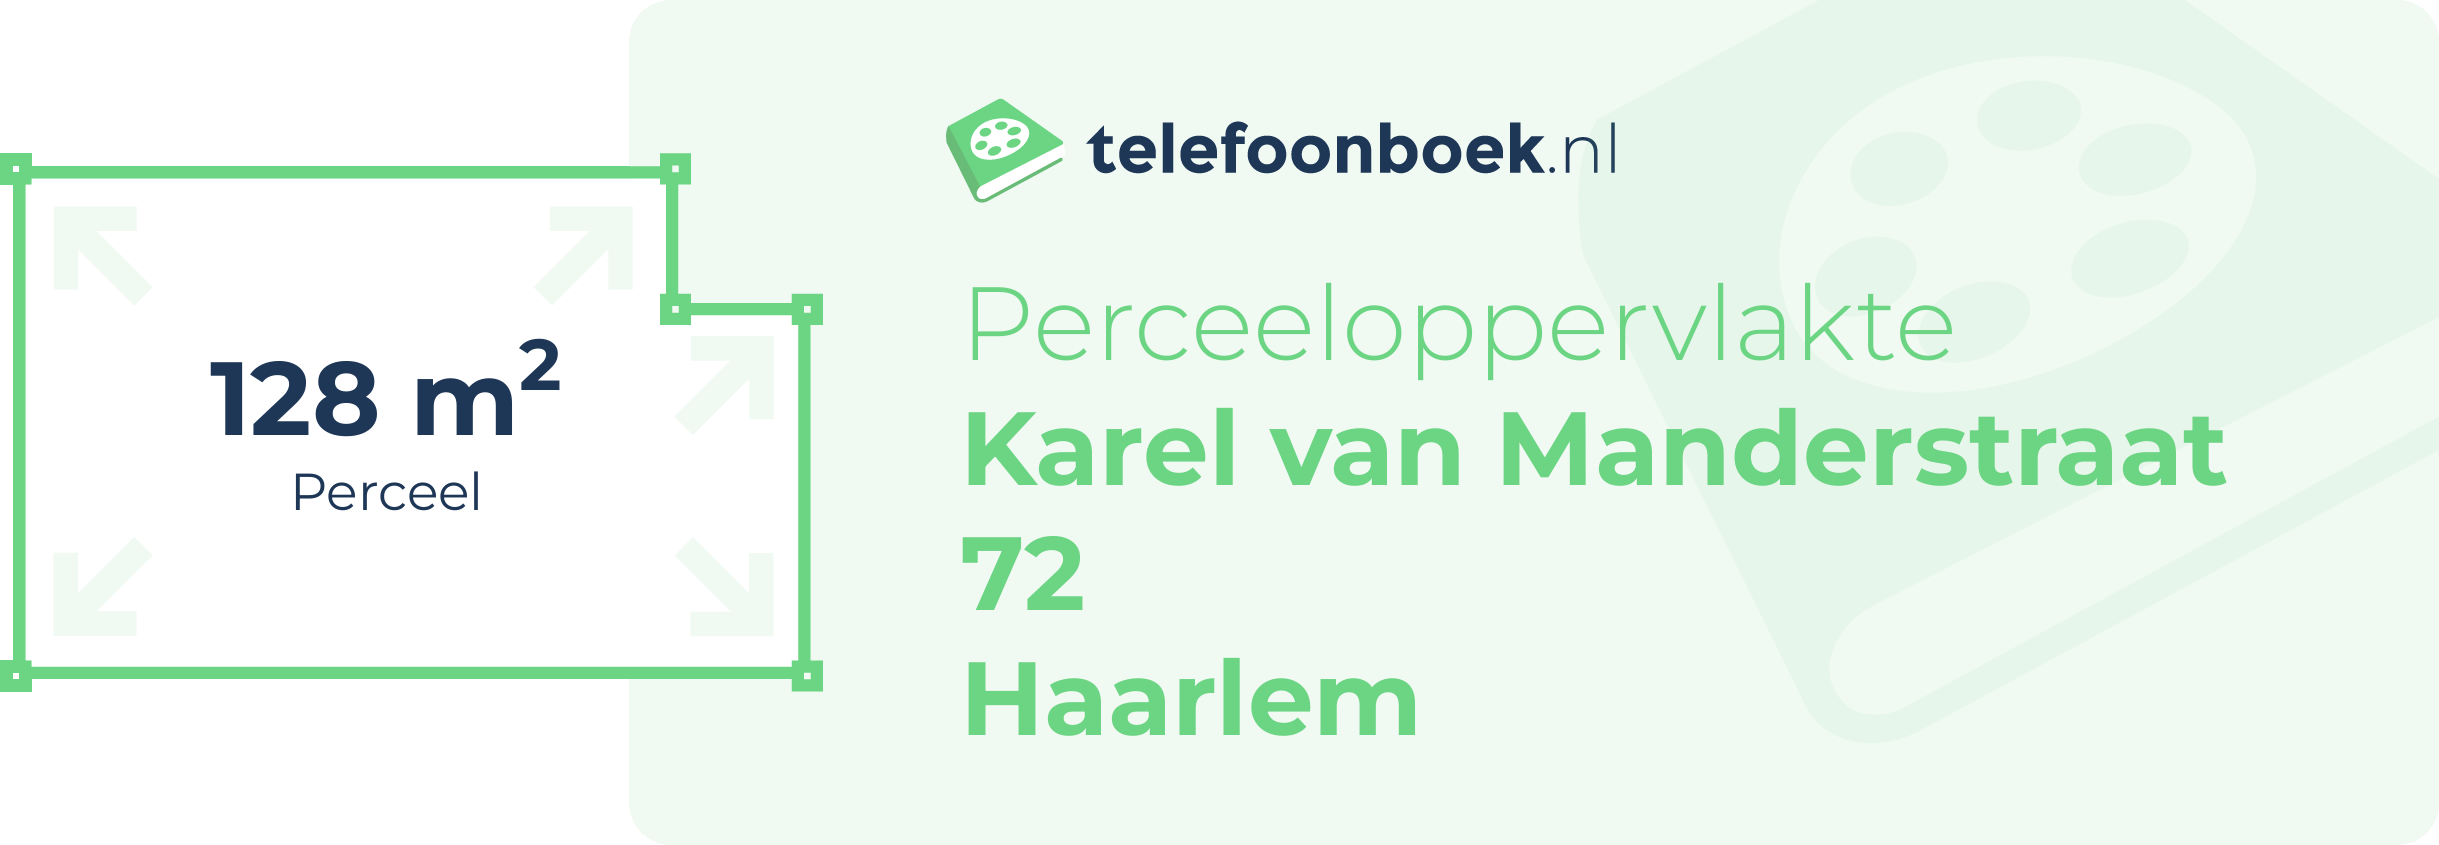 Perceeloppervlakte Karel Van Manderstraat 72 Haarlem